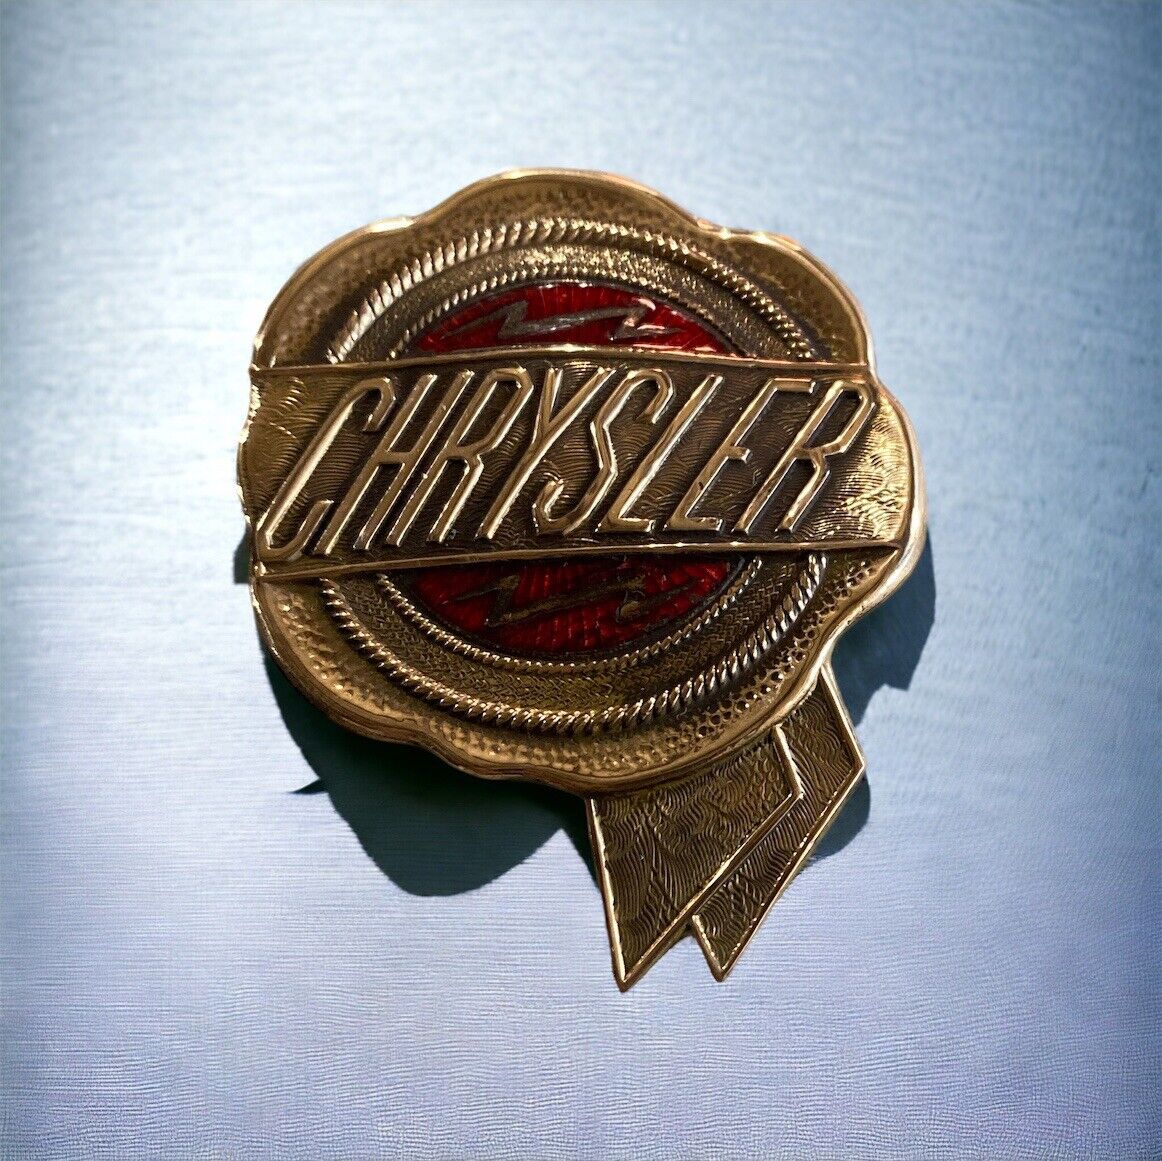 1926 1927 Chrysler Radiator Grille Badge Emblem  Cloisonne  In Center Section